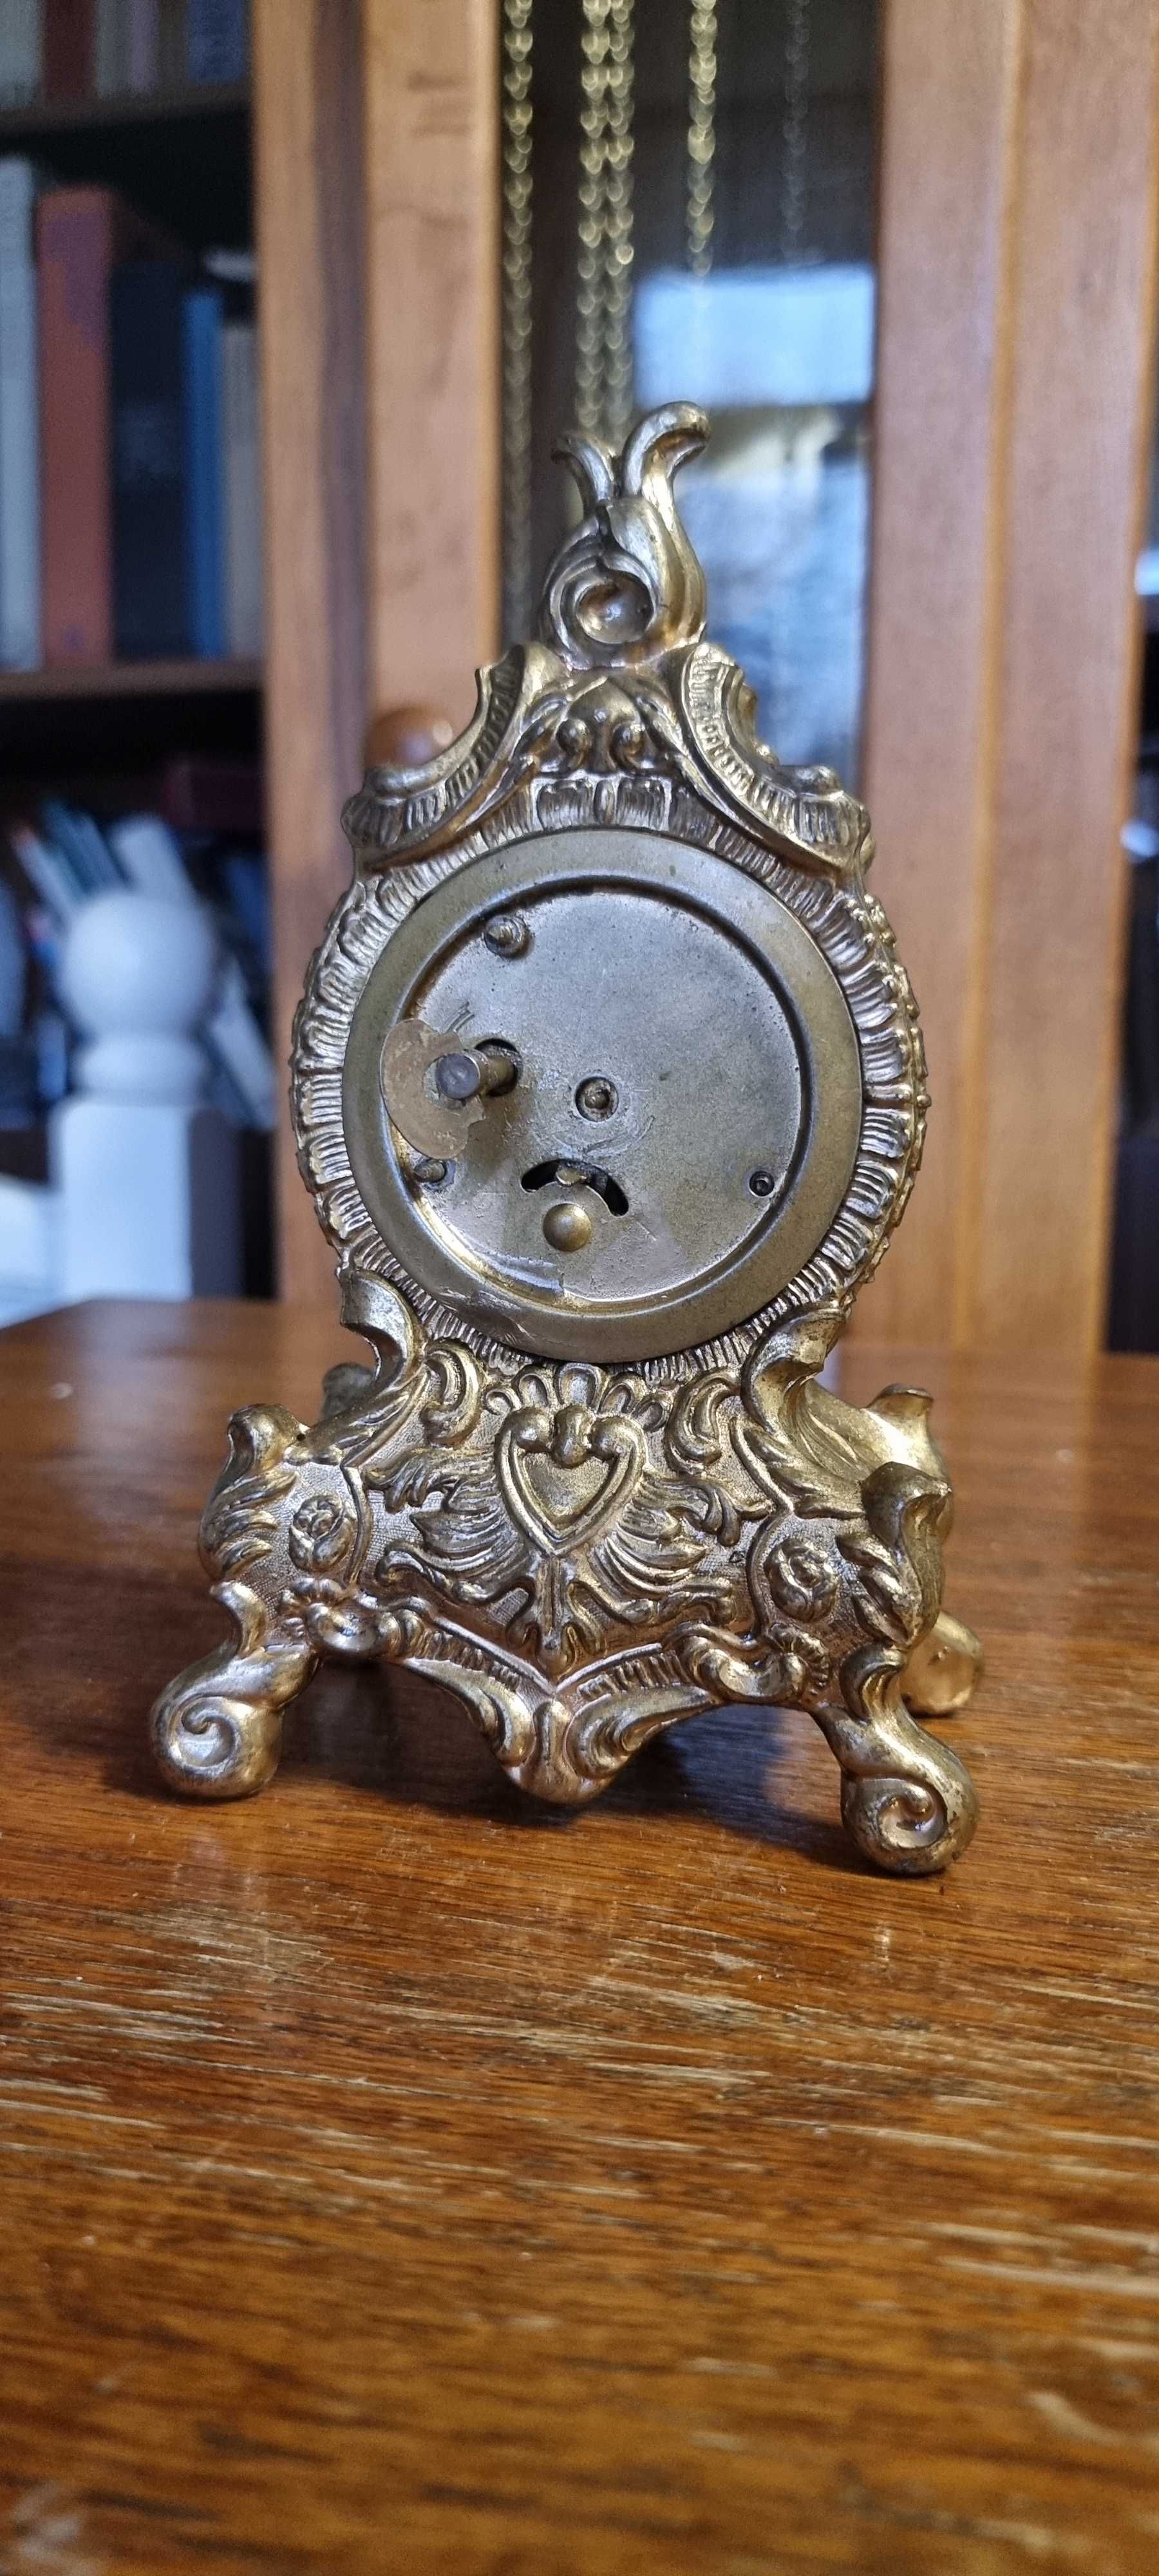 Stary niemiecki zegarek kominkowy